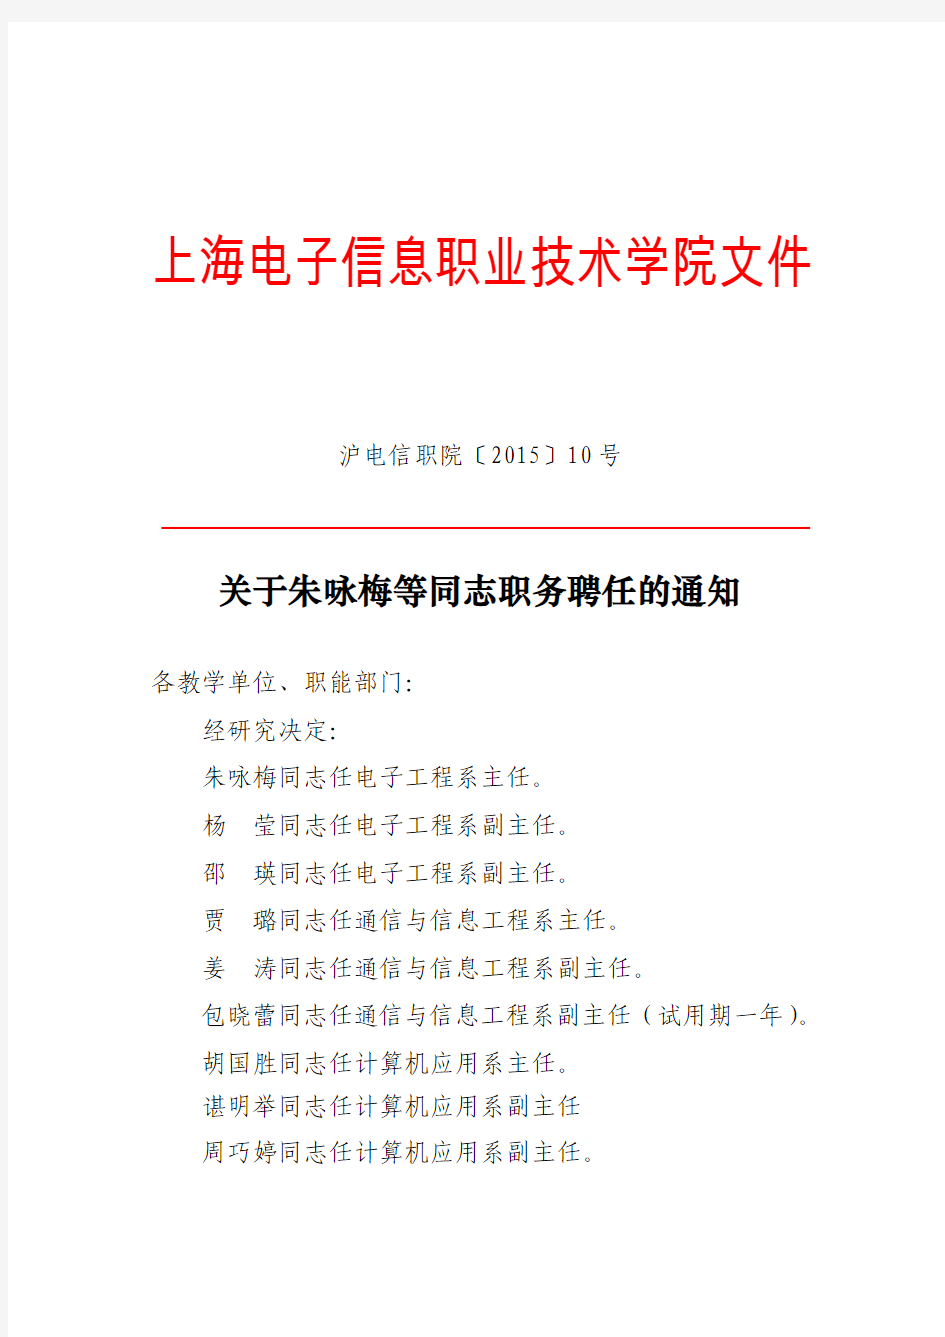 上海电子信息职业技术学院文件